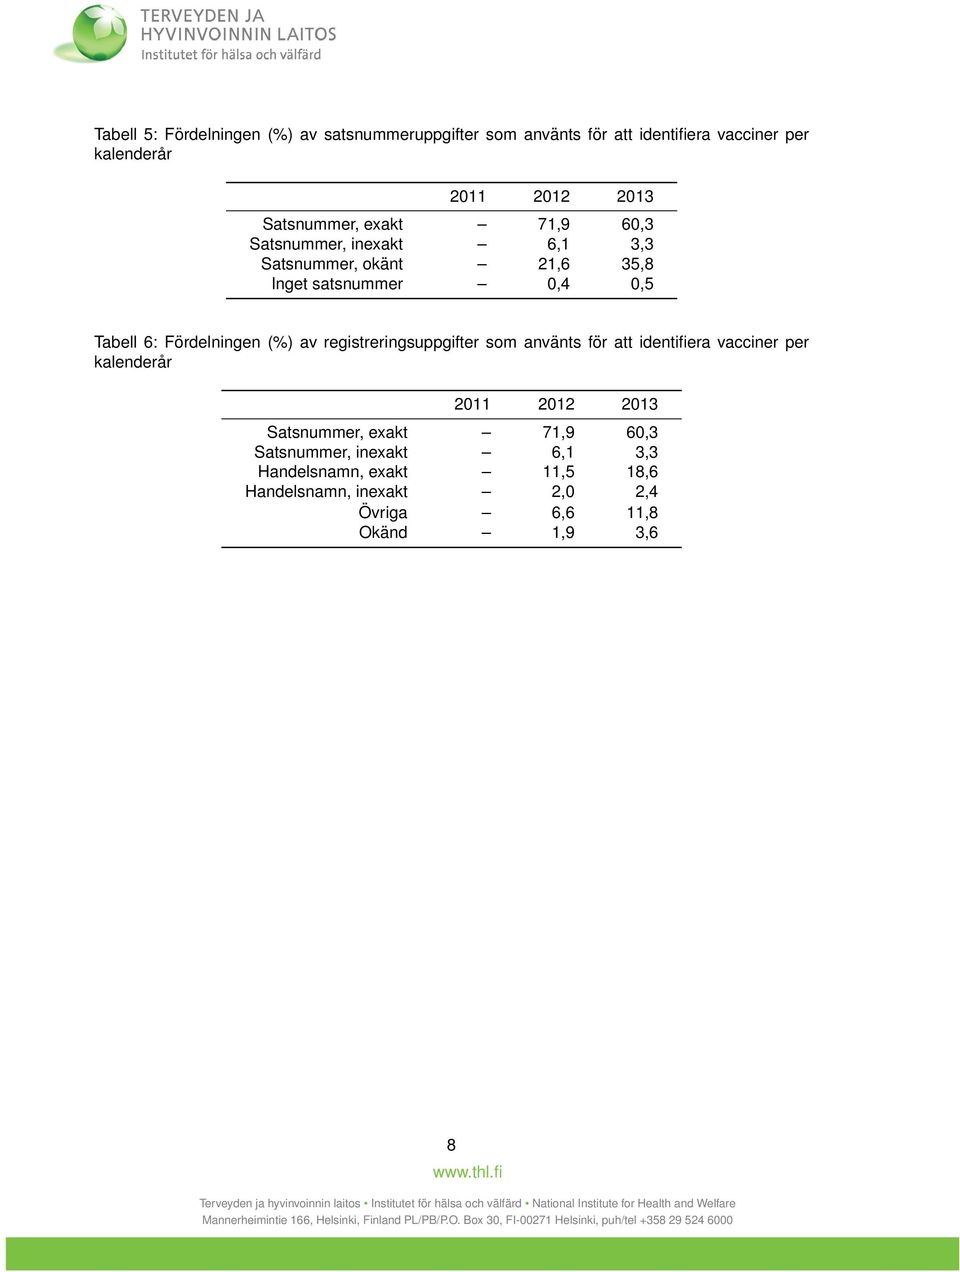 Fördelningen (%) av registreringsuppgifter som använts för att identifiera vacciner per kalenderår 2011 2012 2013